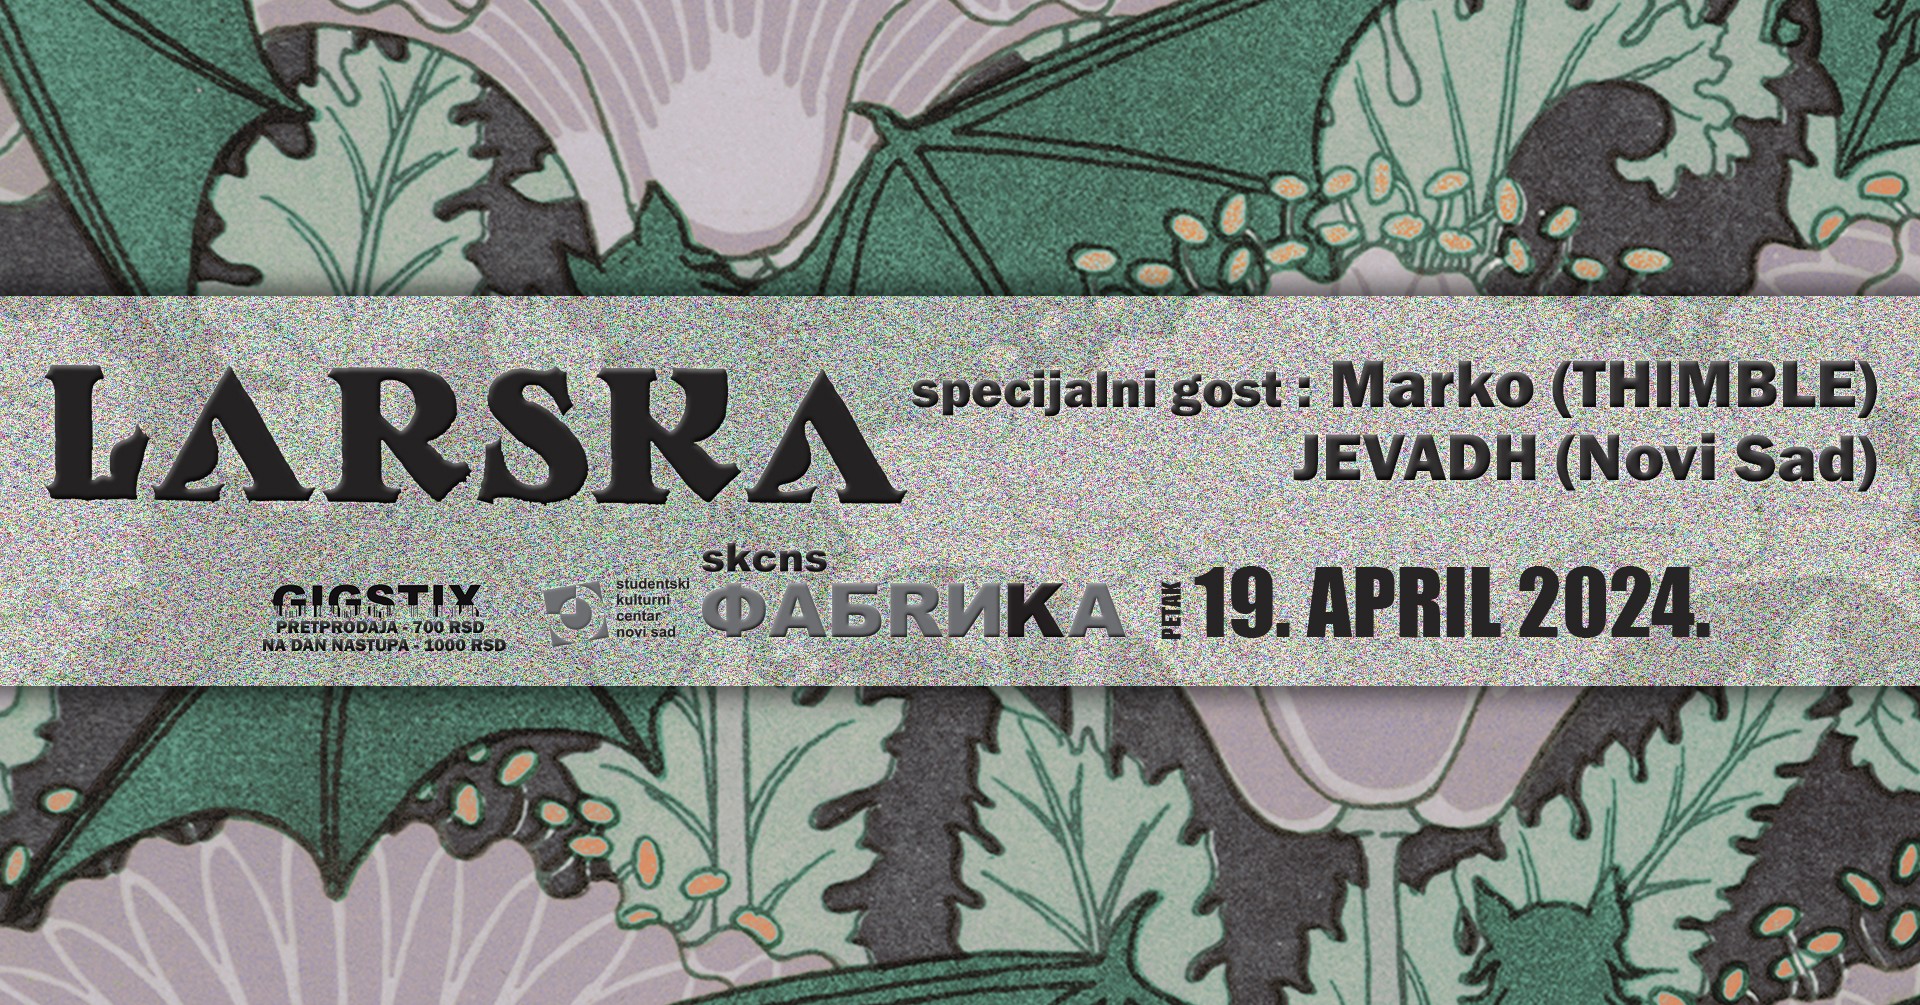 Larska / Marko (Thimble) / Jevadh // SKCNS Fabrika // 19.04.